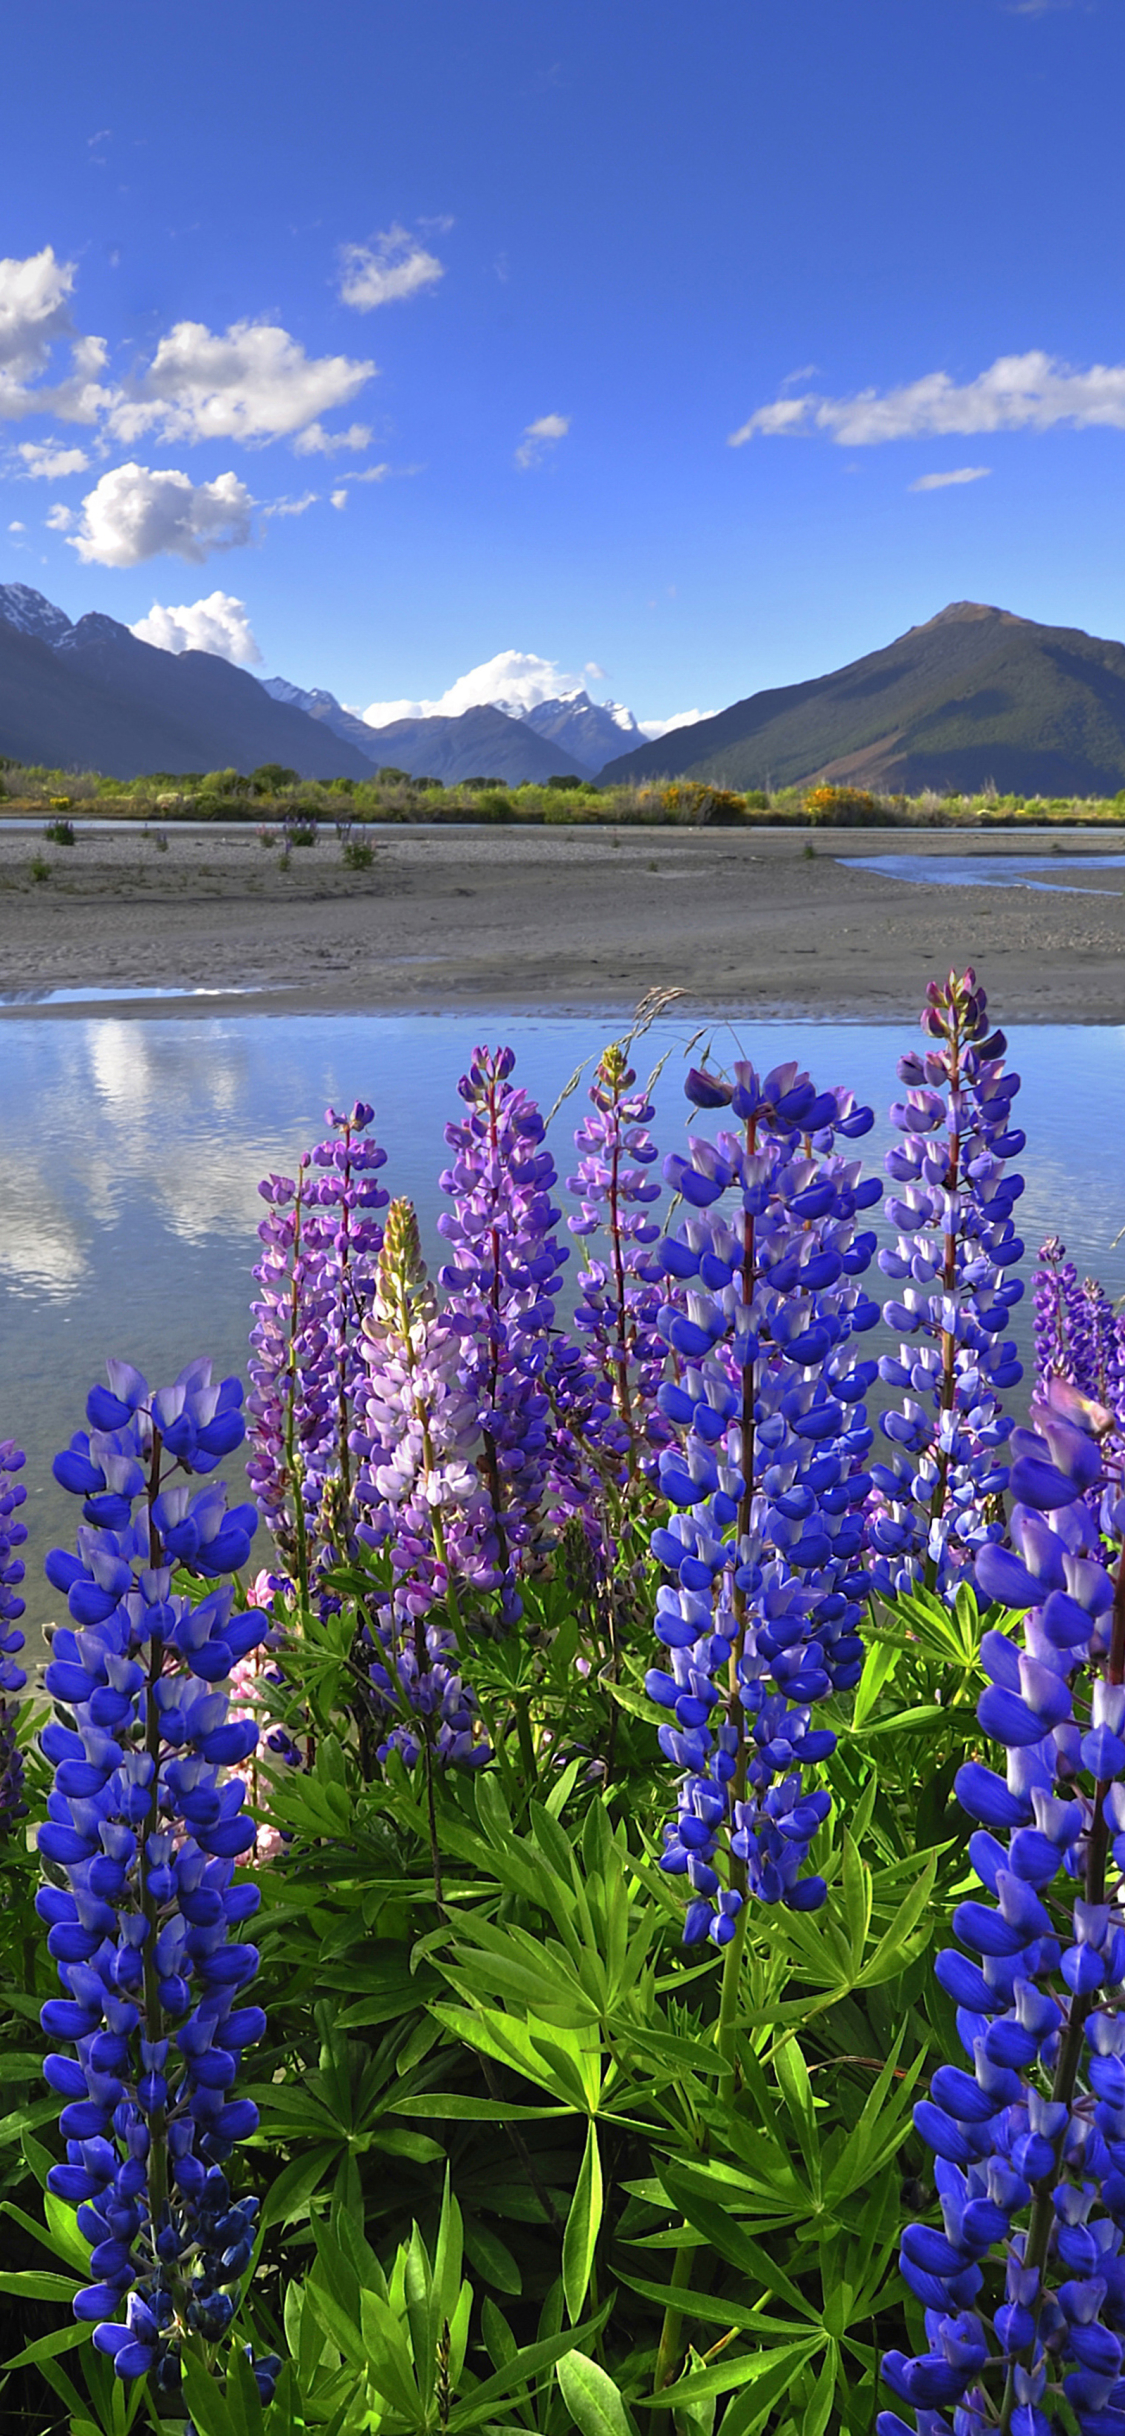 Descarga gratuita de fondo de pantalla para móvil de Paisaje, Naturaleza, Montaña, Lago, Reflexión, Nueva Zelanda, Lupino, Tierra/naturaleza, Reflejo, Altramuz.